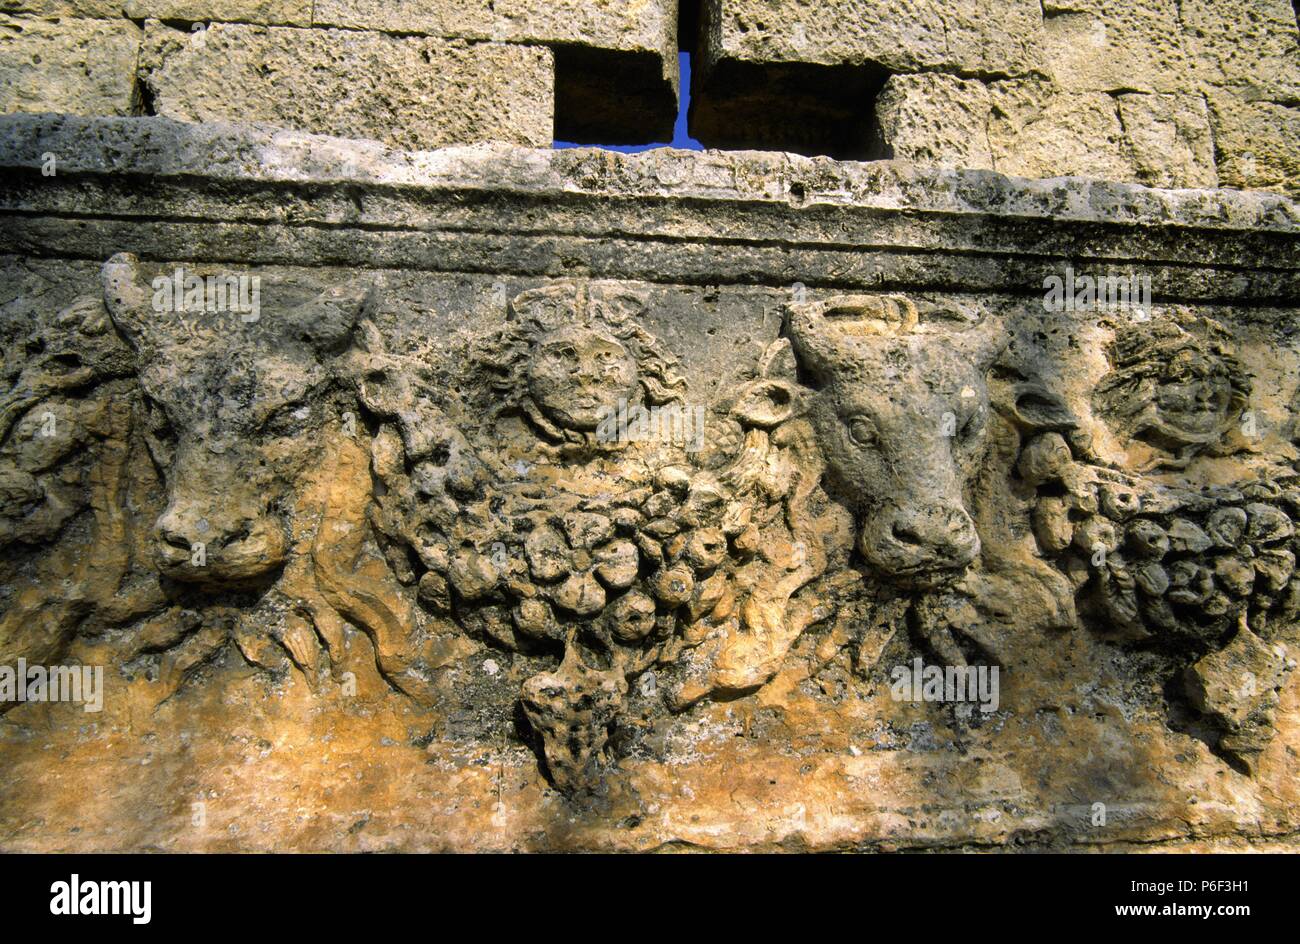 Friso con toros y rostros tallados.Templo de Zeus-Olbius .Pueblo de Uzuncaburç(diocesarea). Silifke.Mediterraneo oriental.Turquia. Stock Photo